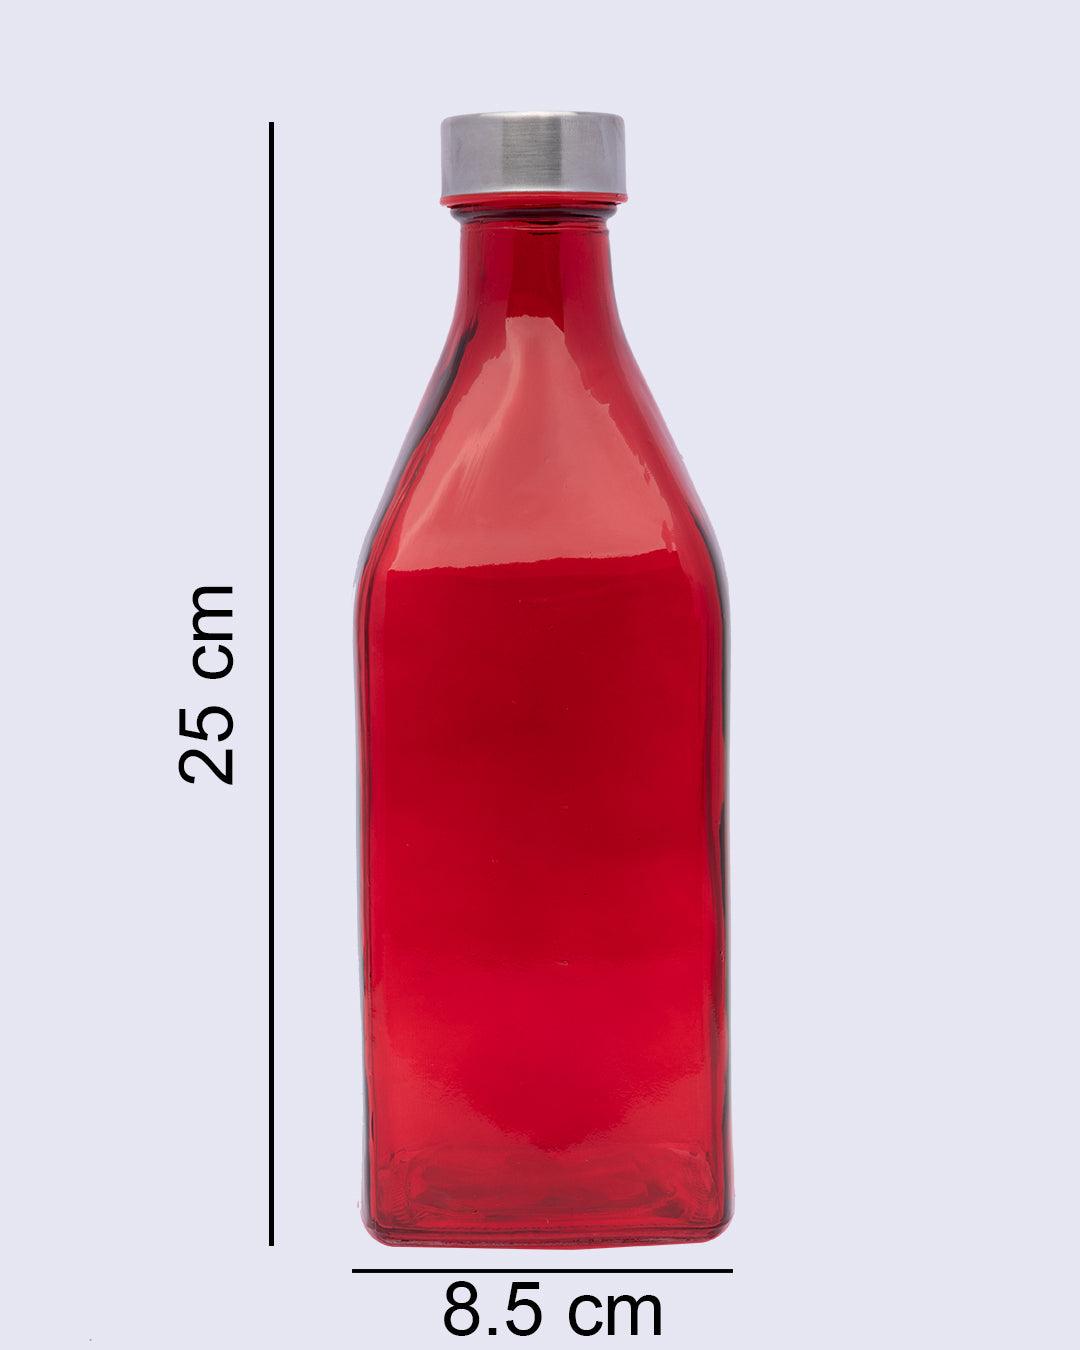 Glass Bottle, Water Bottle, Modern Design, Red, Glass, 1.1 Litre - MARKET 99